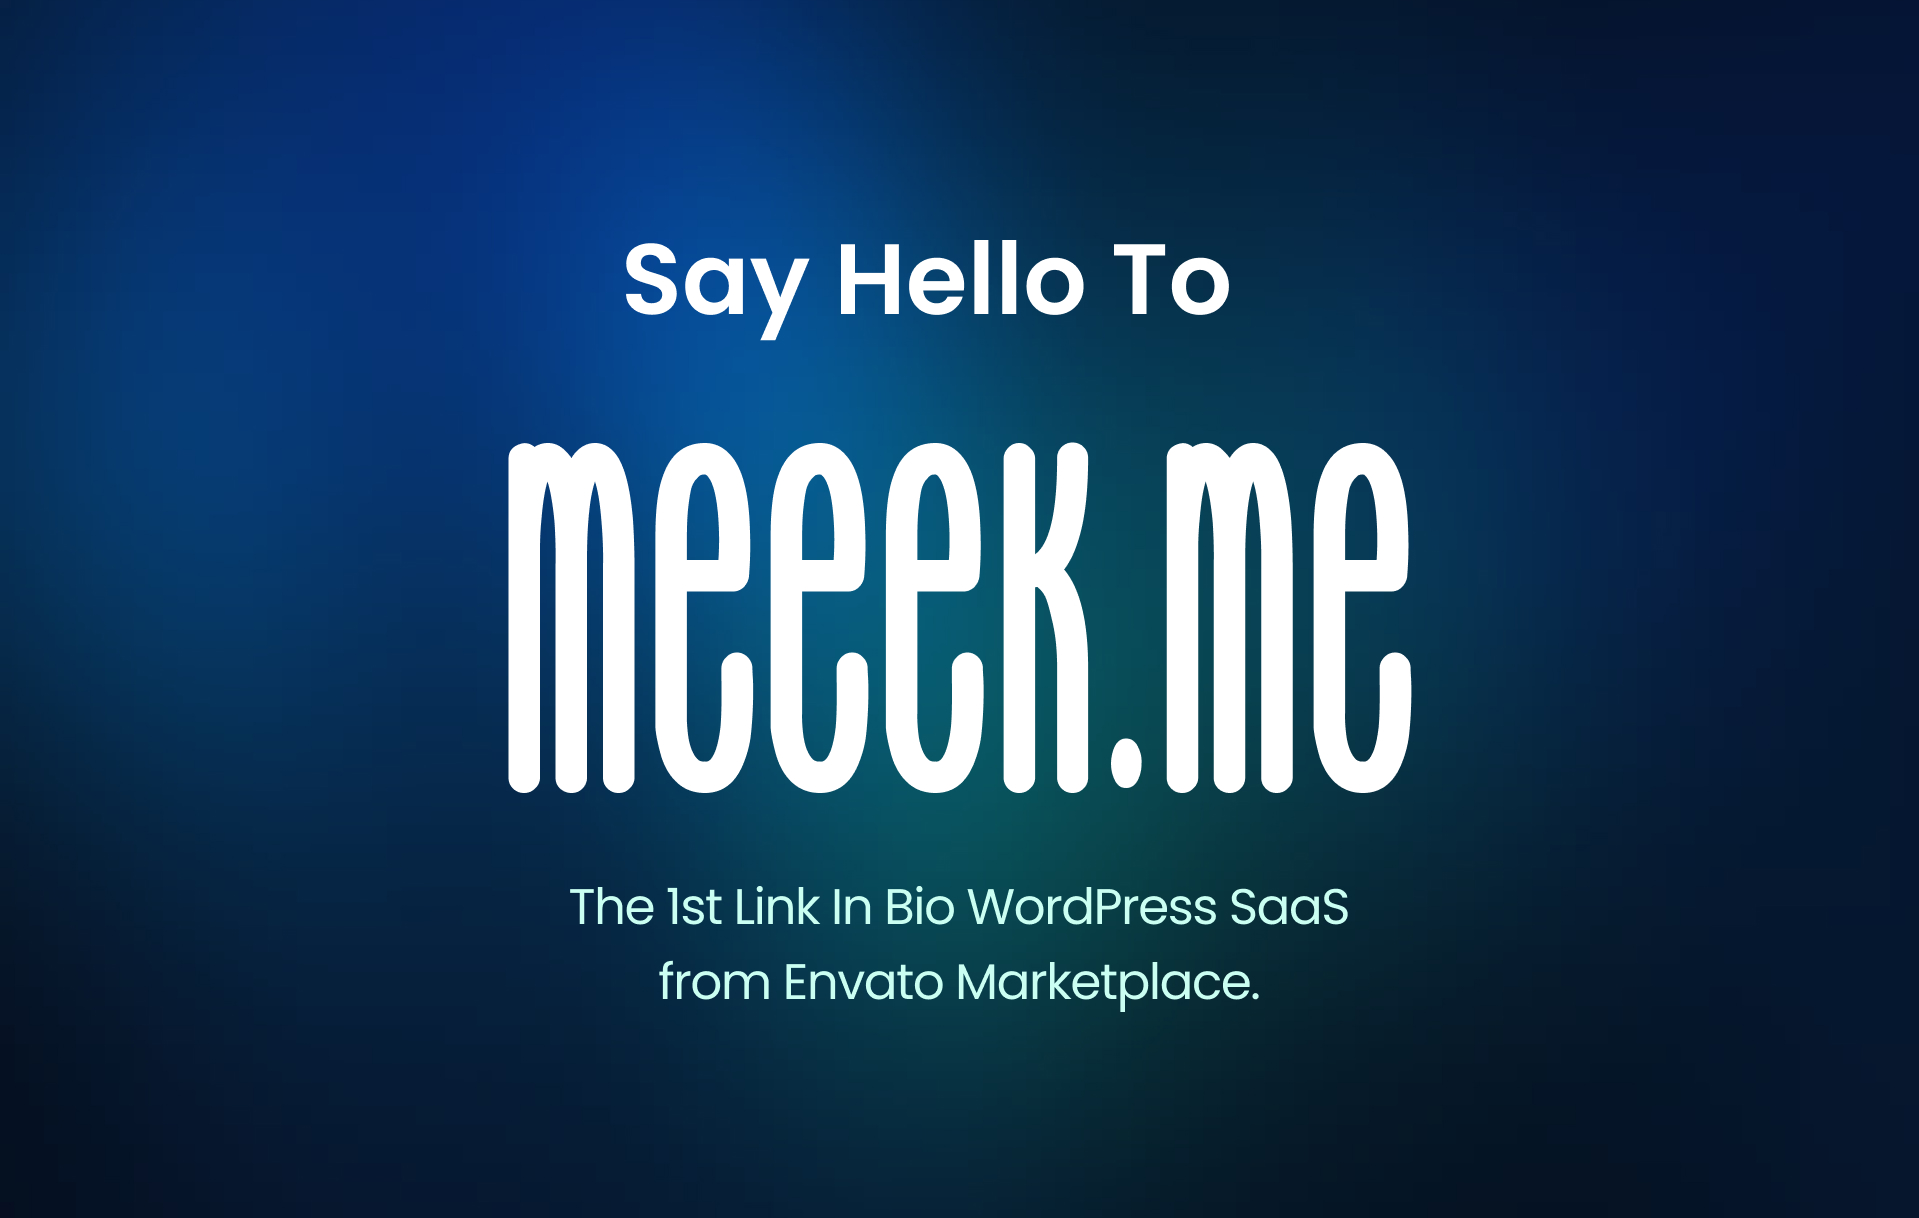 Link In Bio WordPress SaaS - Meeek